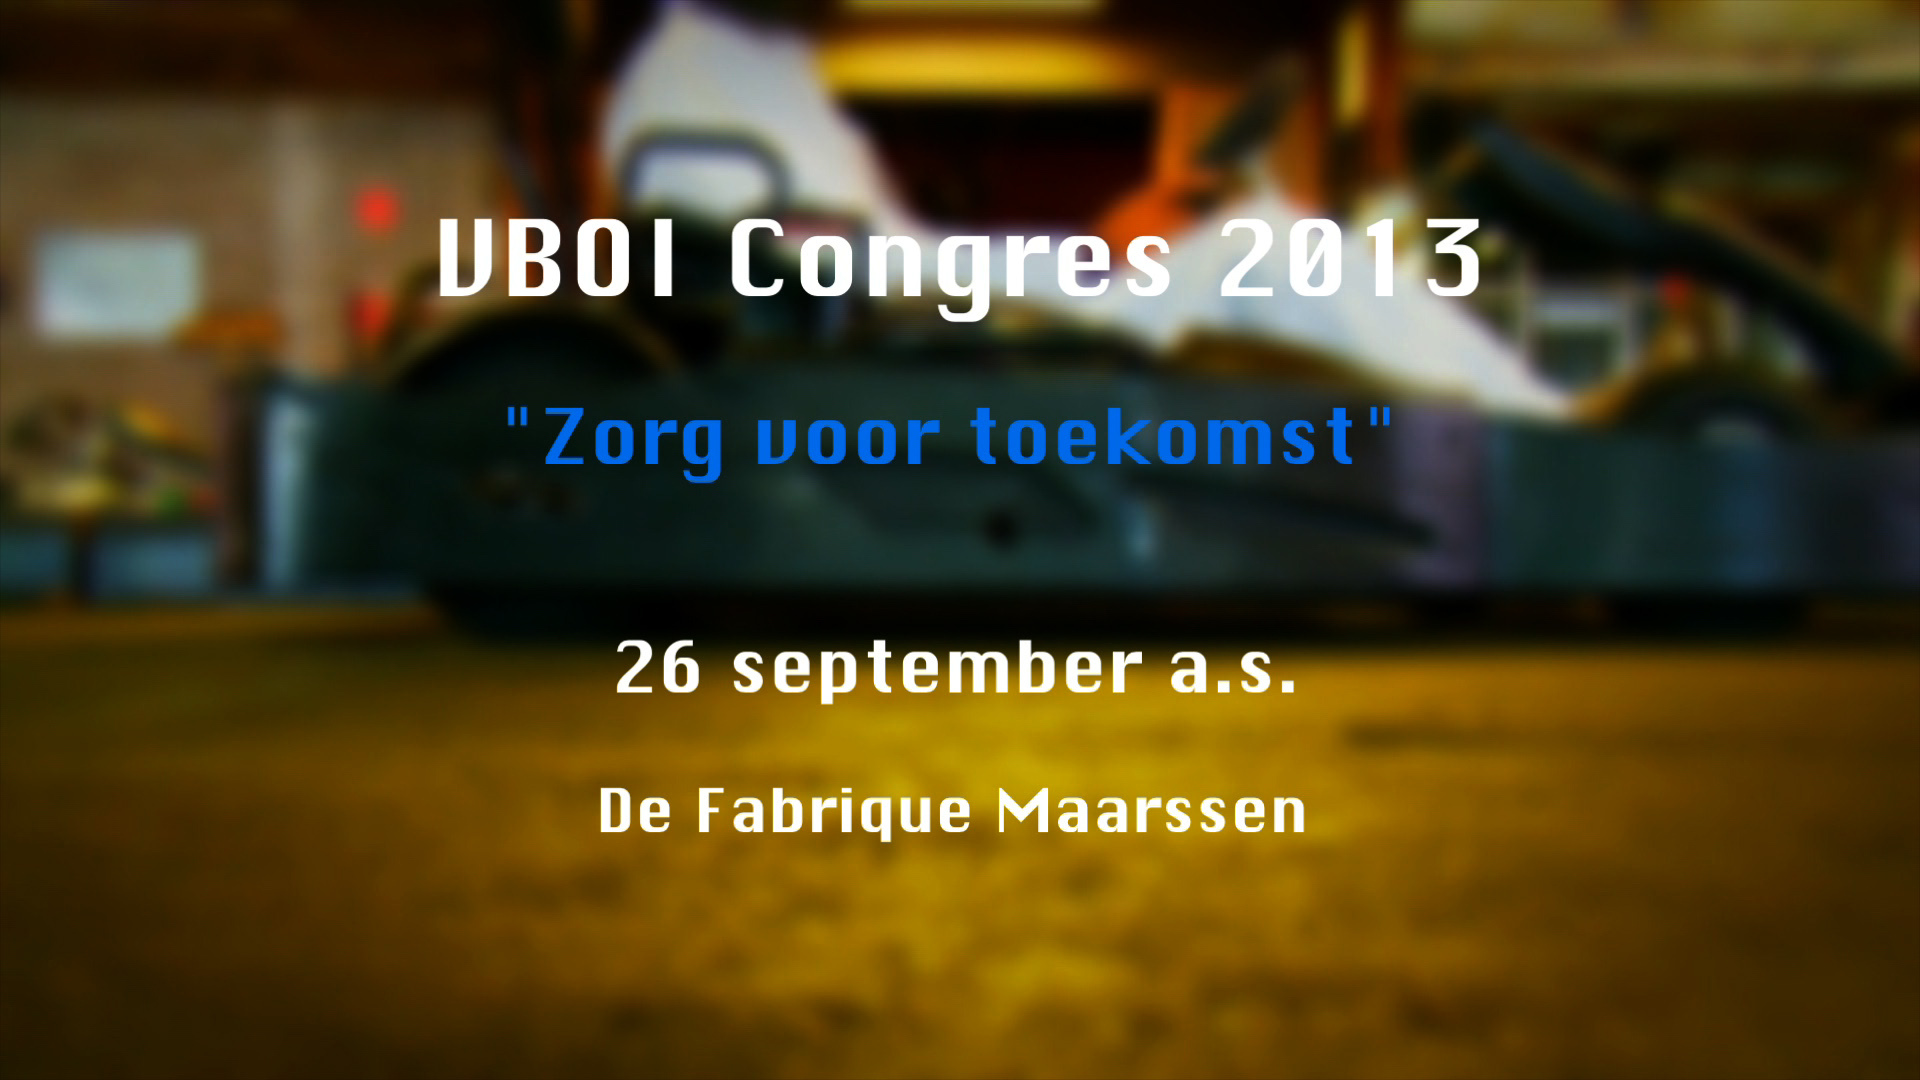 Commercial VBOI Congres 2013